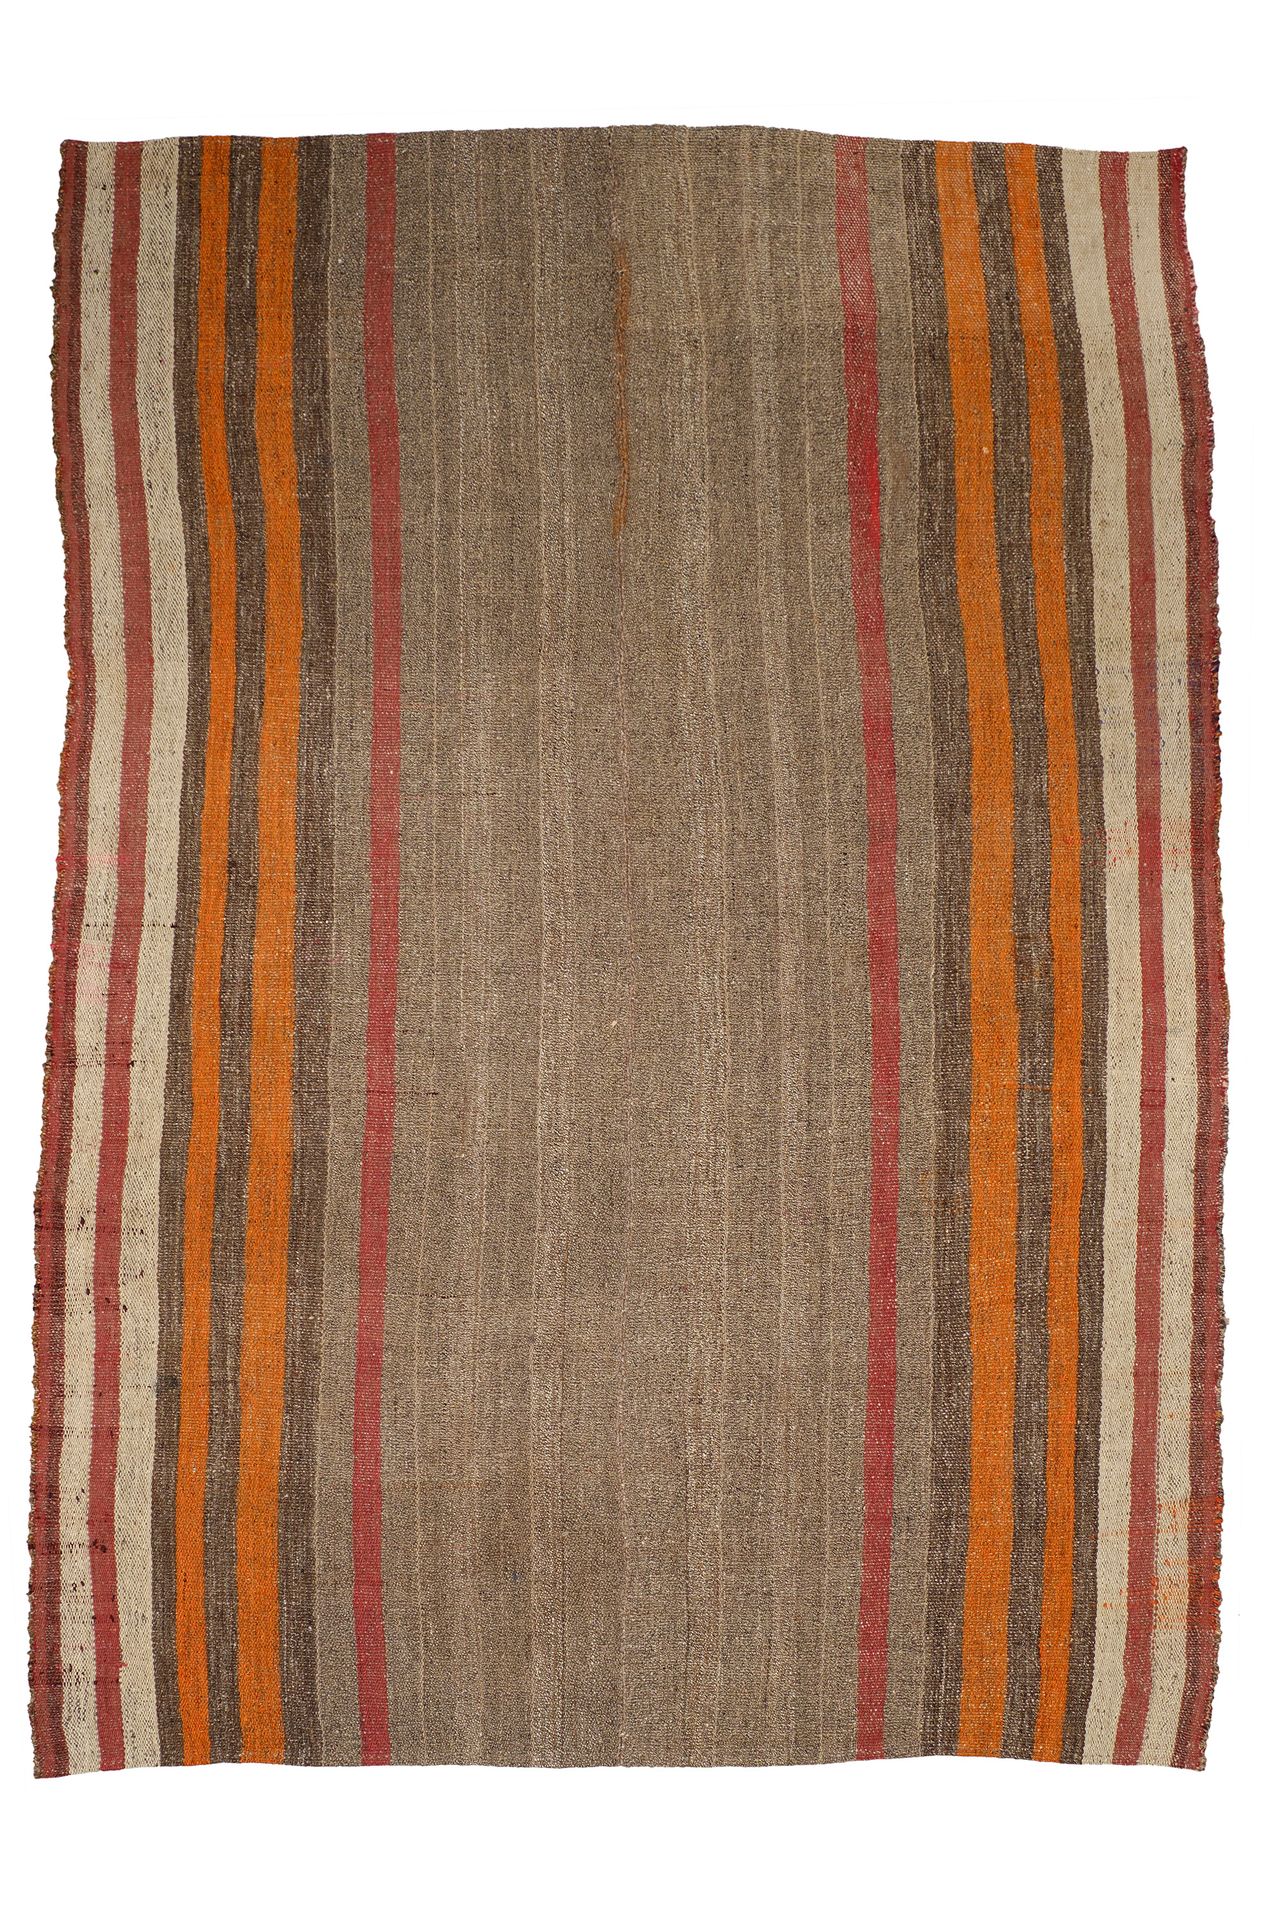 Qashqai Rug - c.1880 伊朗 - 洛里人

羊毛和植物染料 - 279 cm x 178 cm